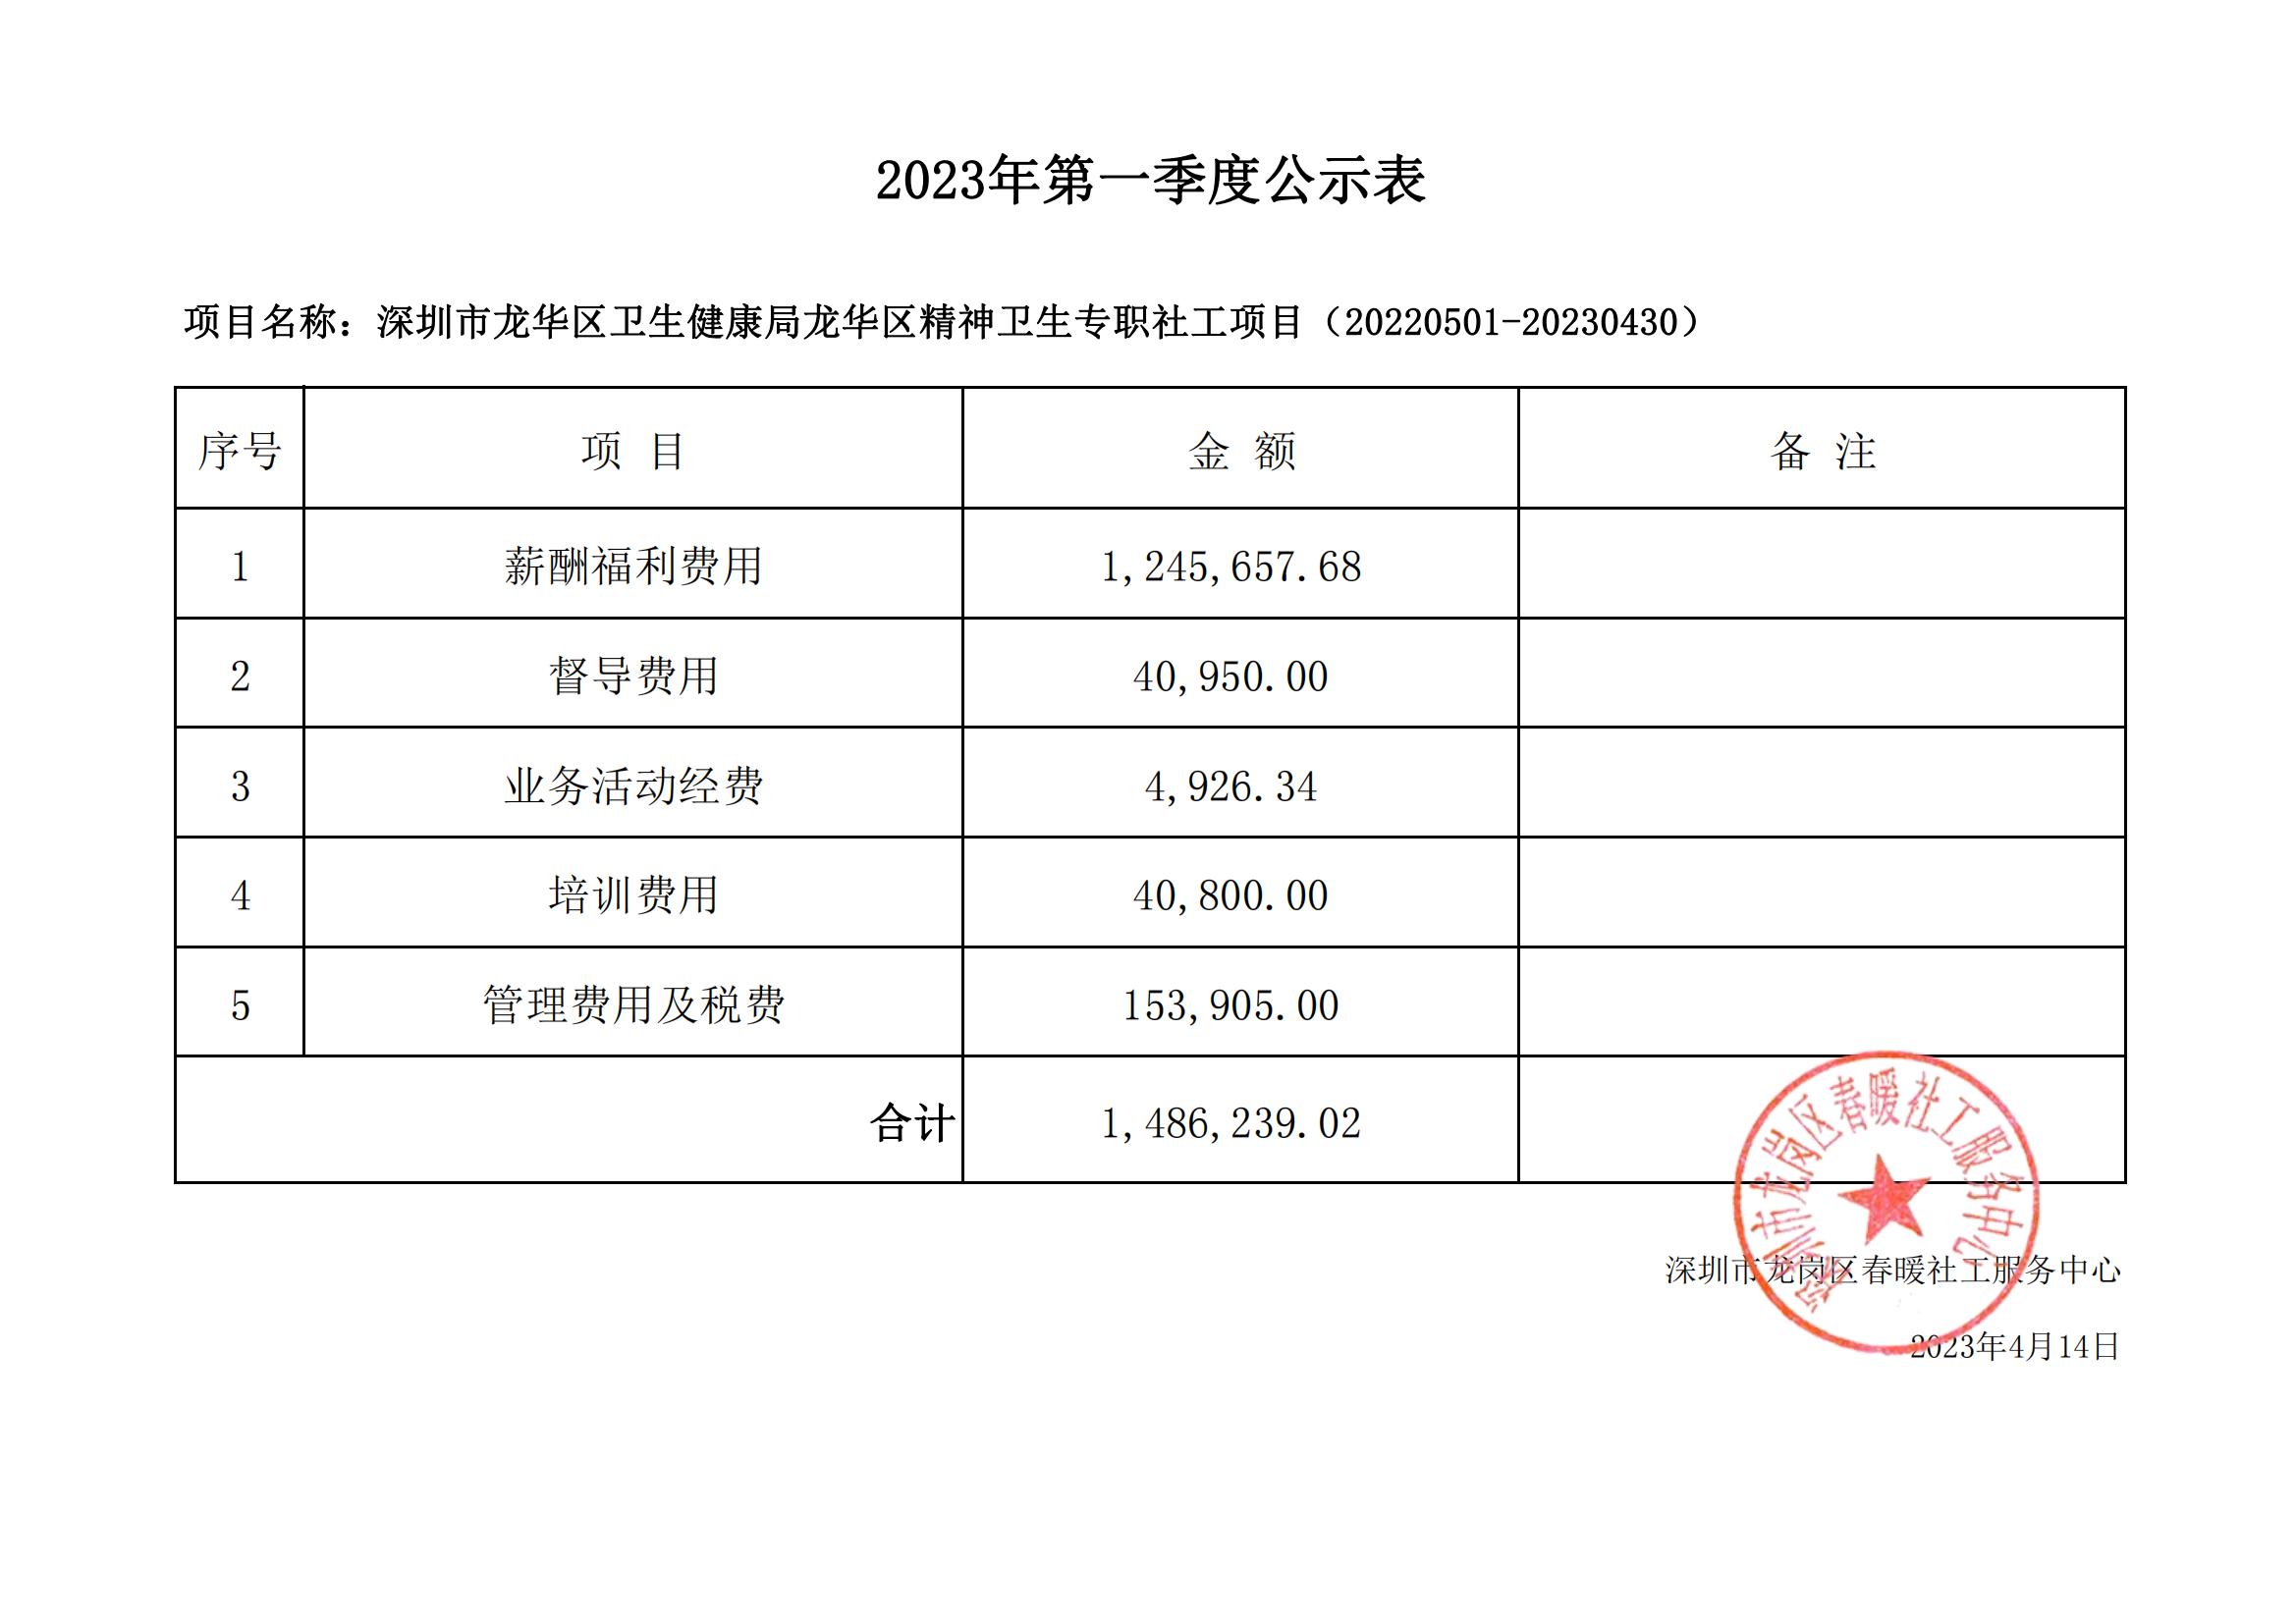 深圳市龙华区卫生健康局龙华区精神卫生专职社工项目财务公示（2023年第一季度）